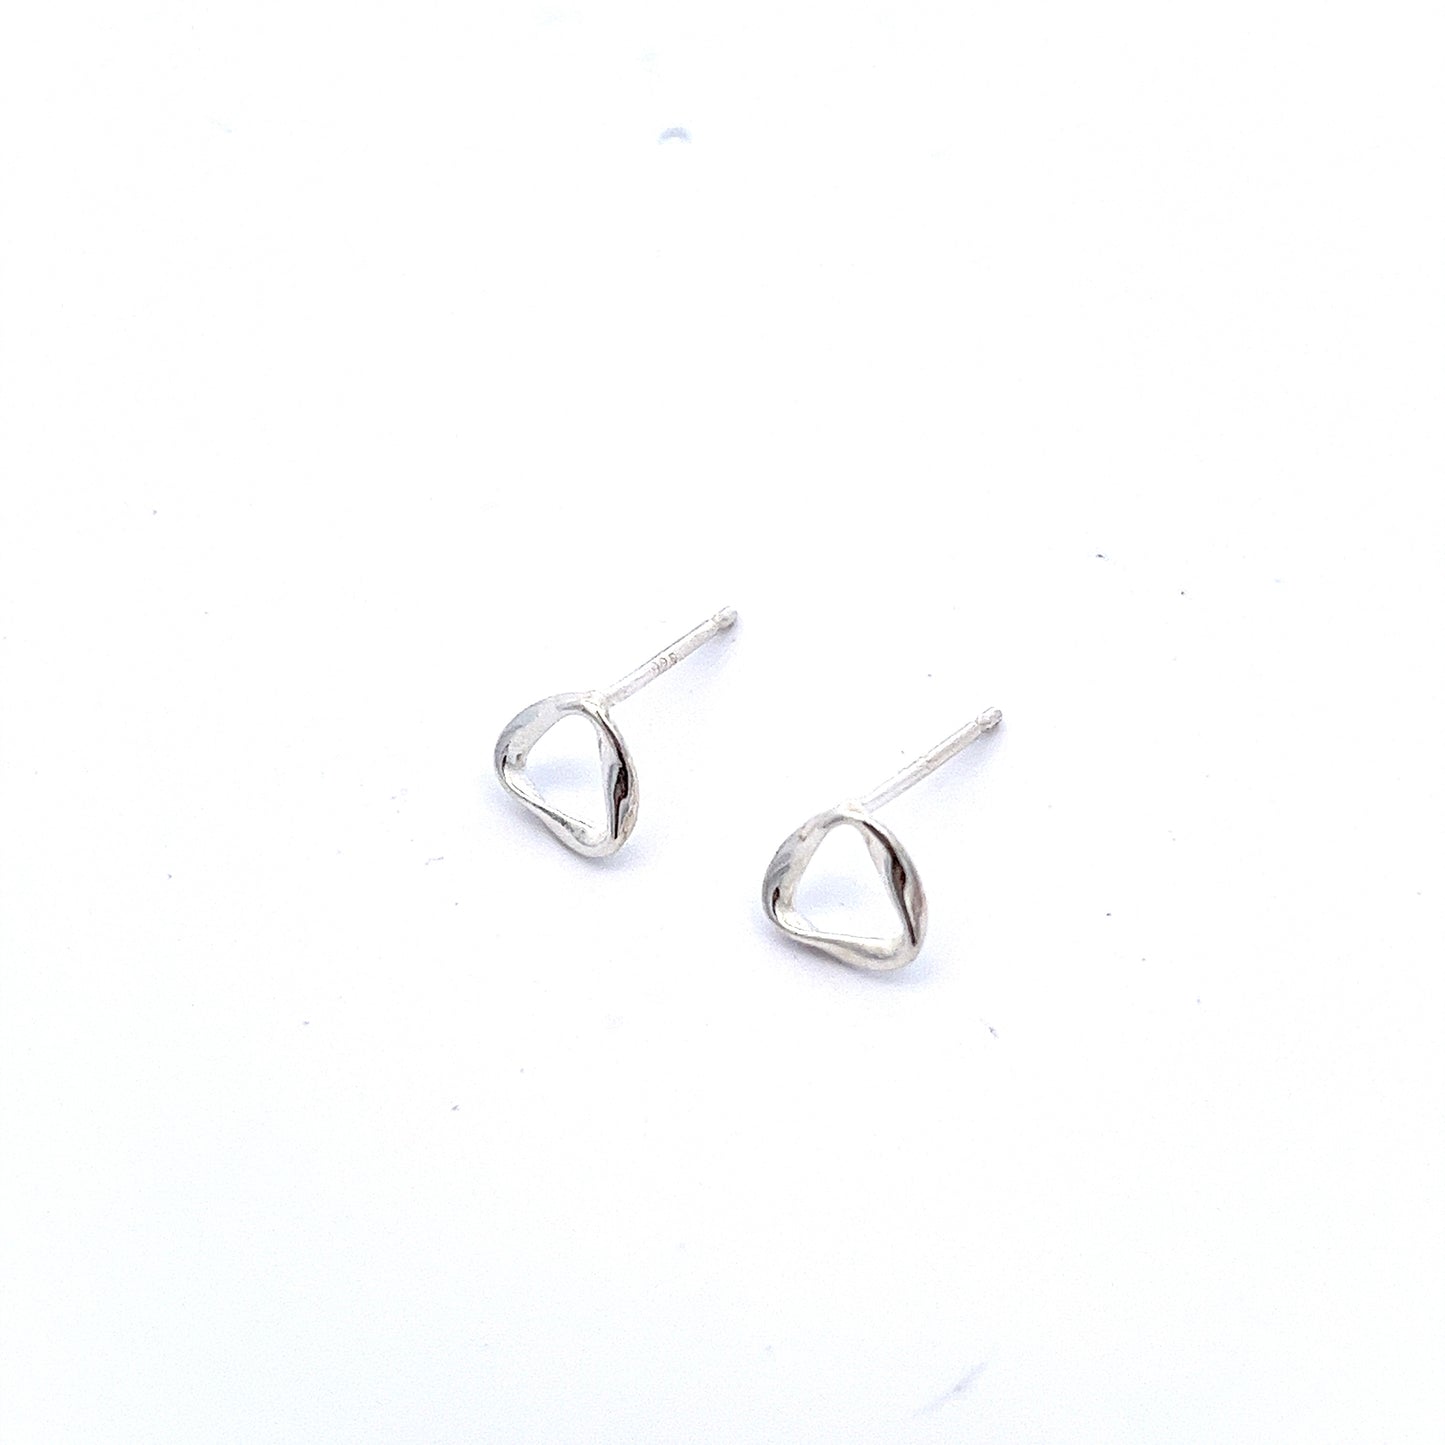 Tri Earrings in Silver